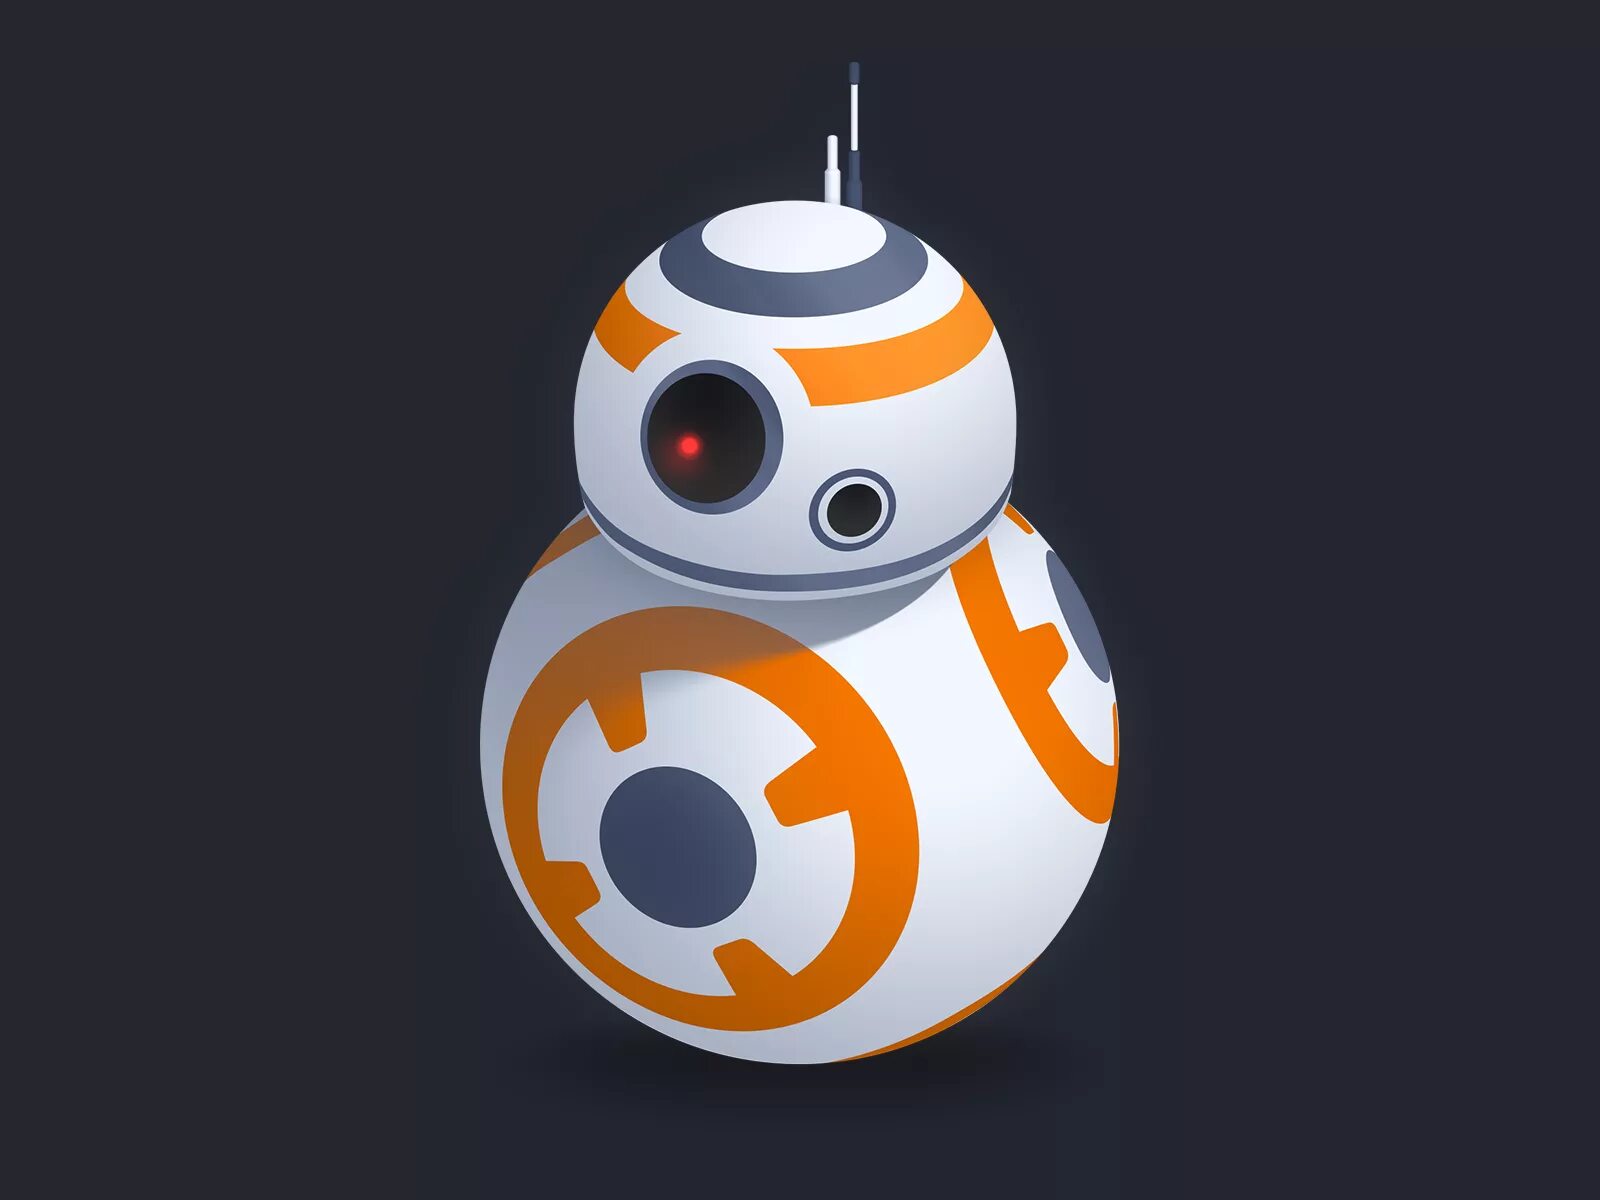 Вв 8. BB-8 (дроид). Имперский bb8. Дроид из Звездных войн BB-8. Робот из Звездных войн BB-8.